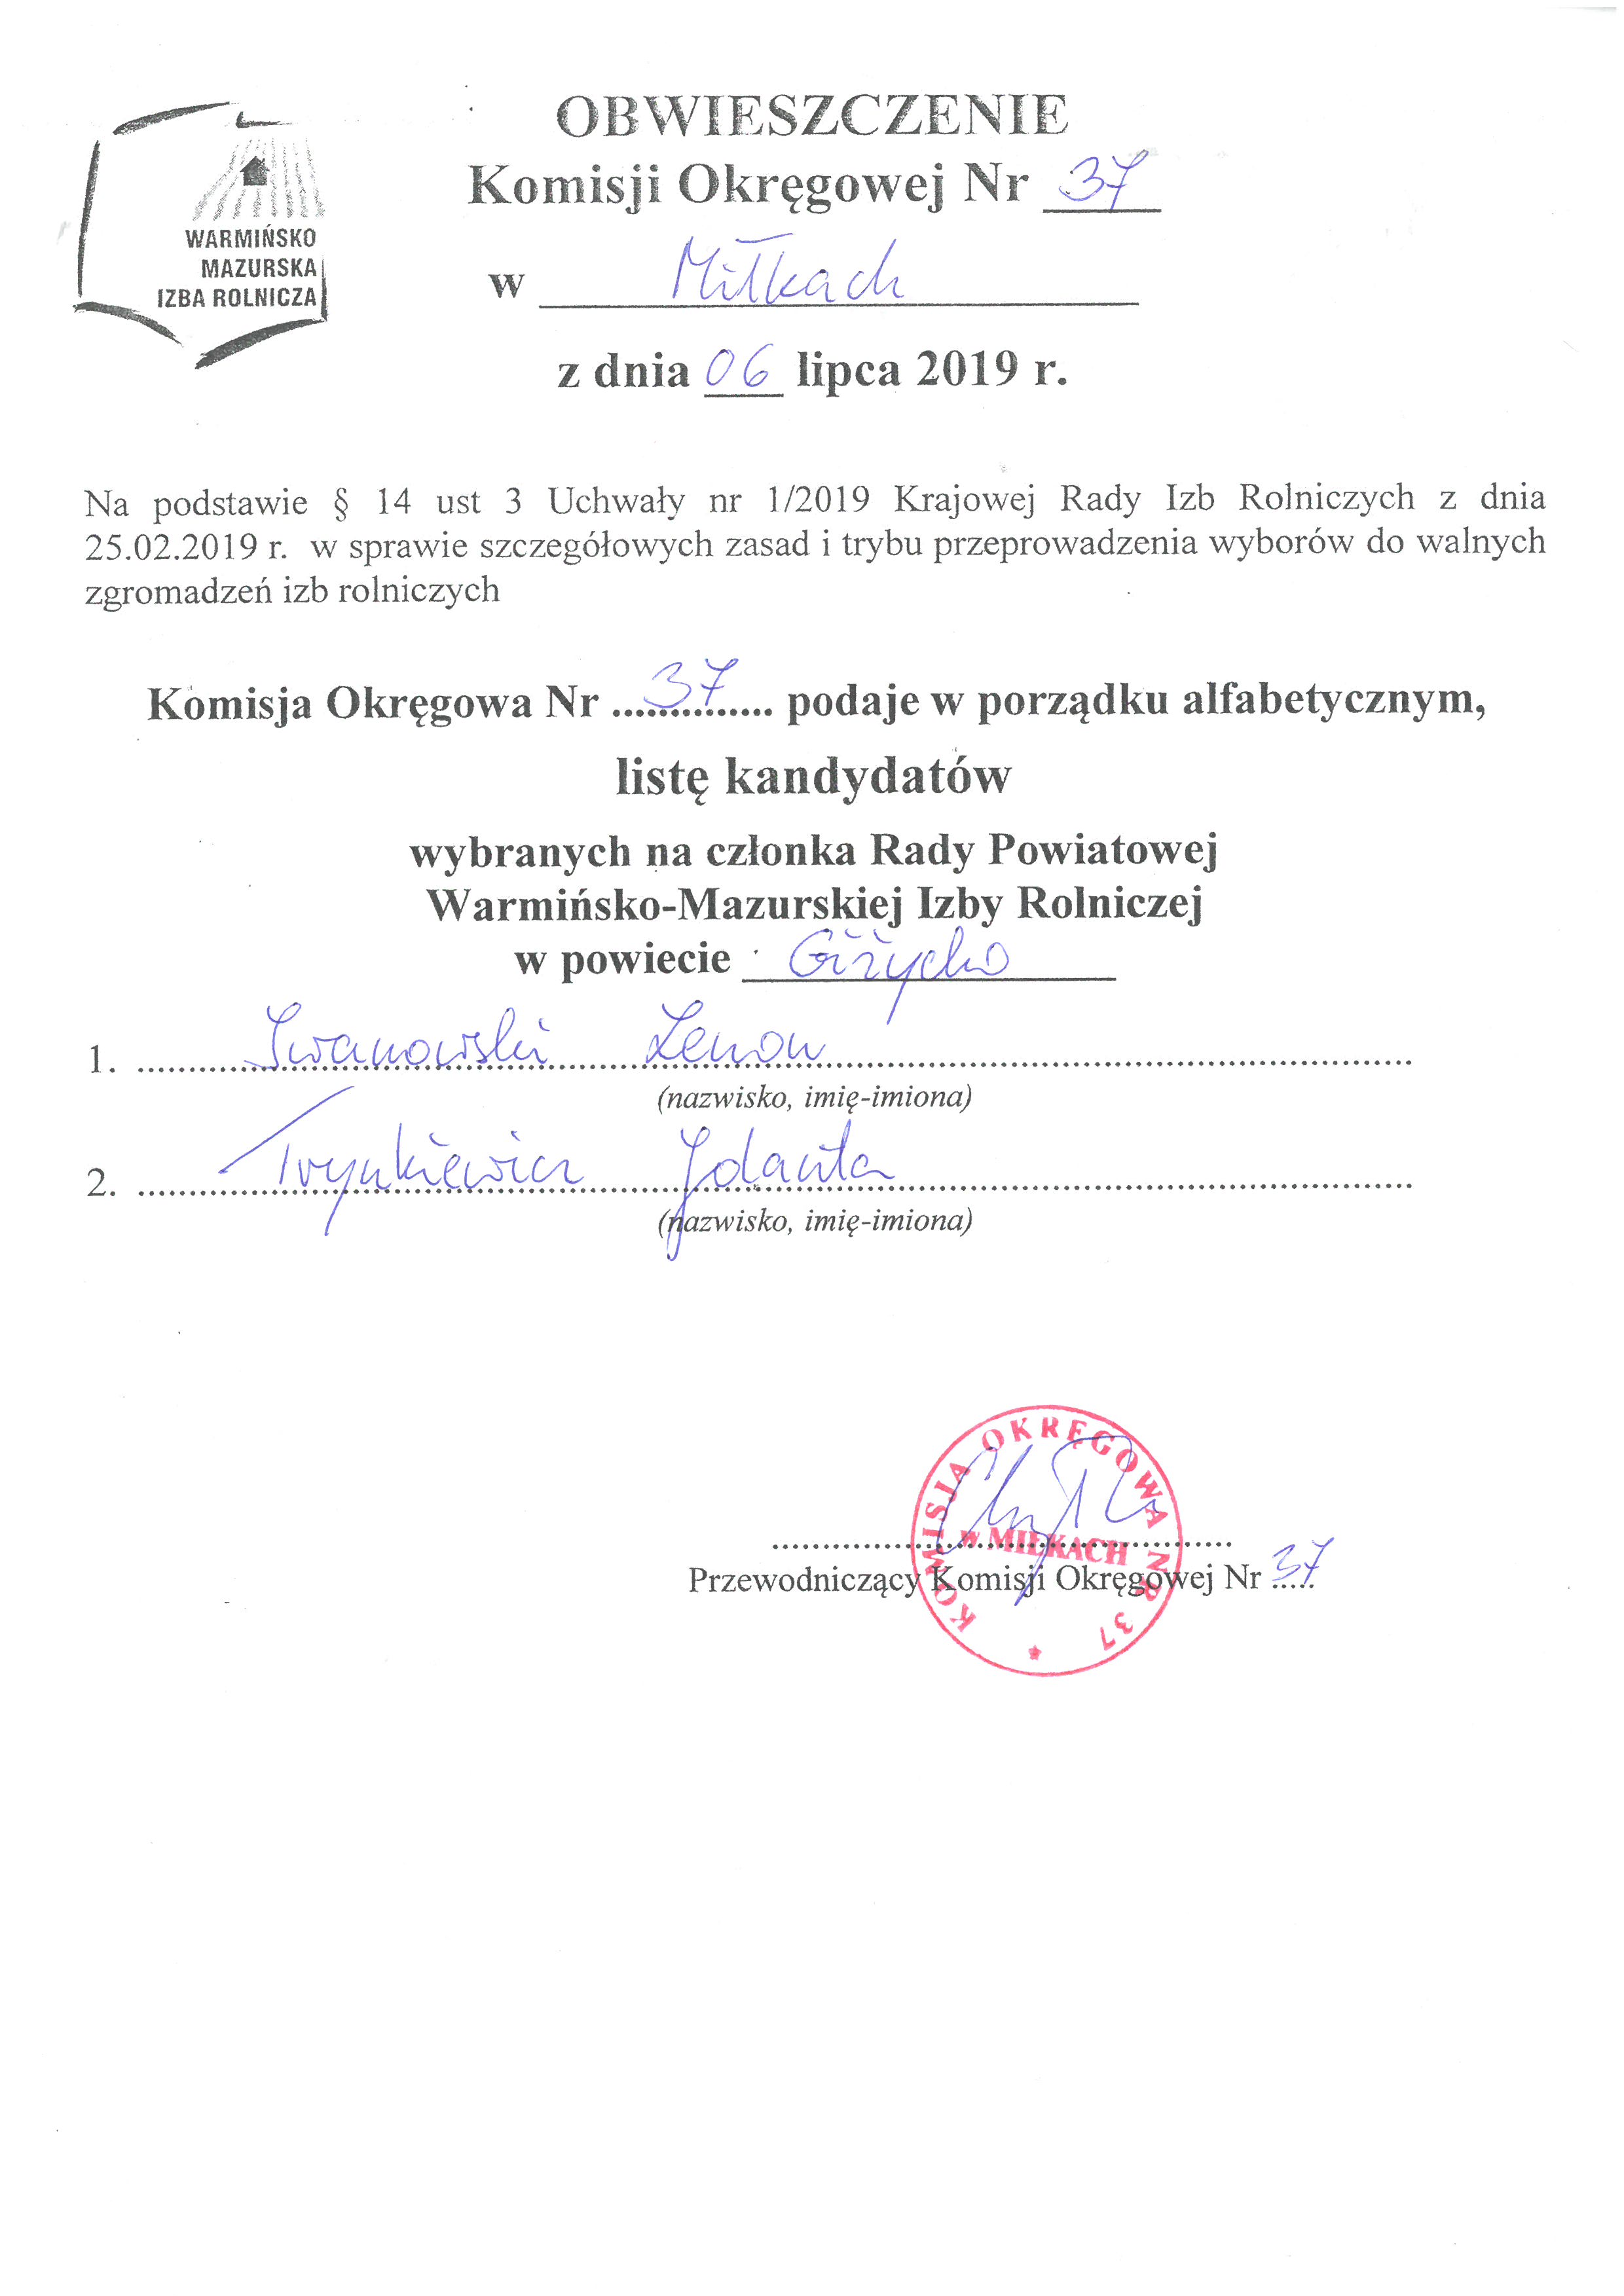 Obwieszczenie-Komisji-Okręgowej-Nr-37-w-Miłkach-z-dnia-06-lipca-2019-r.